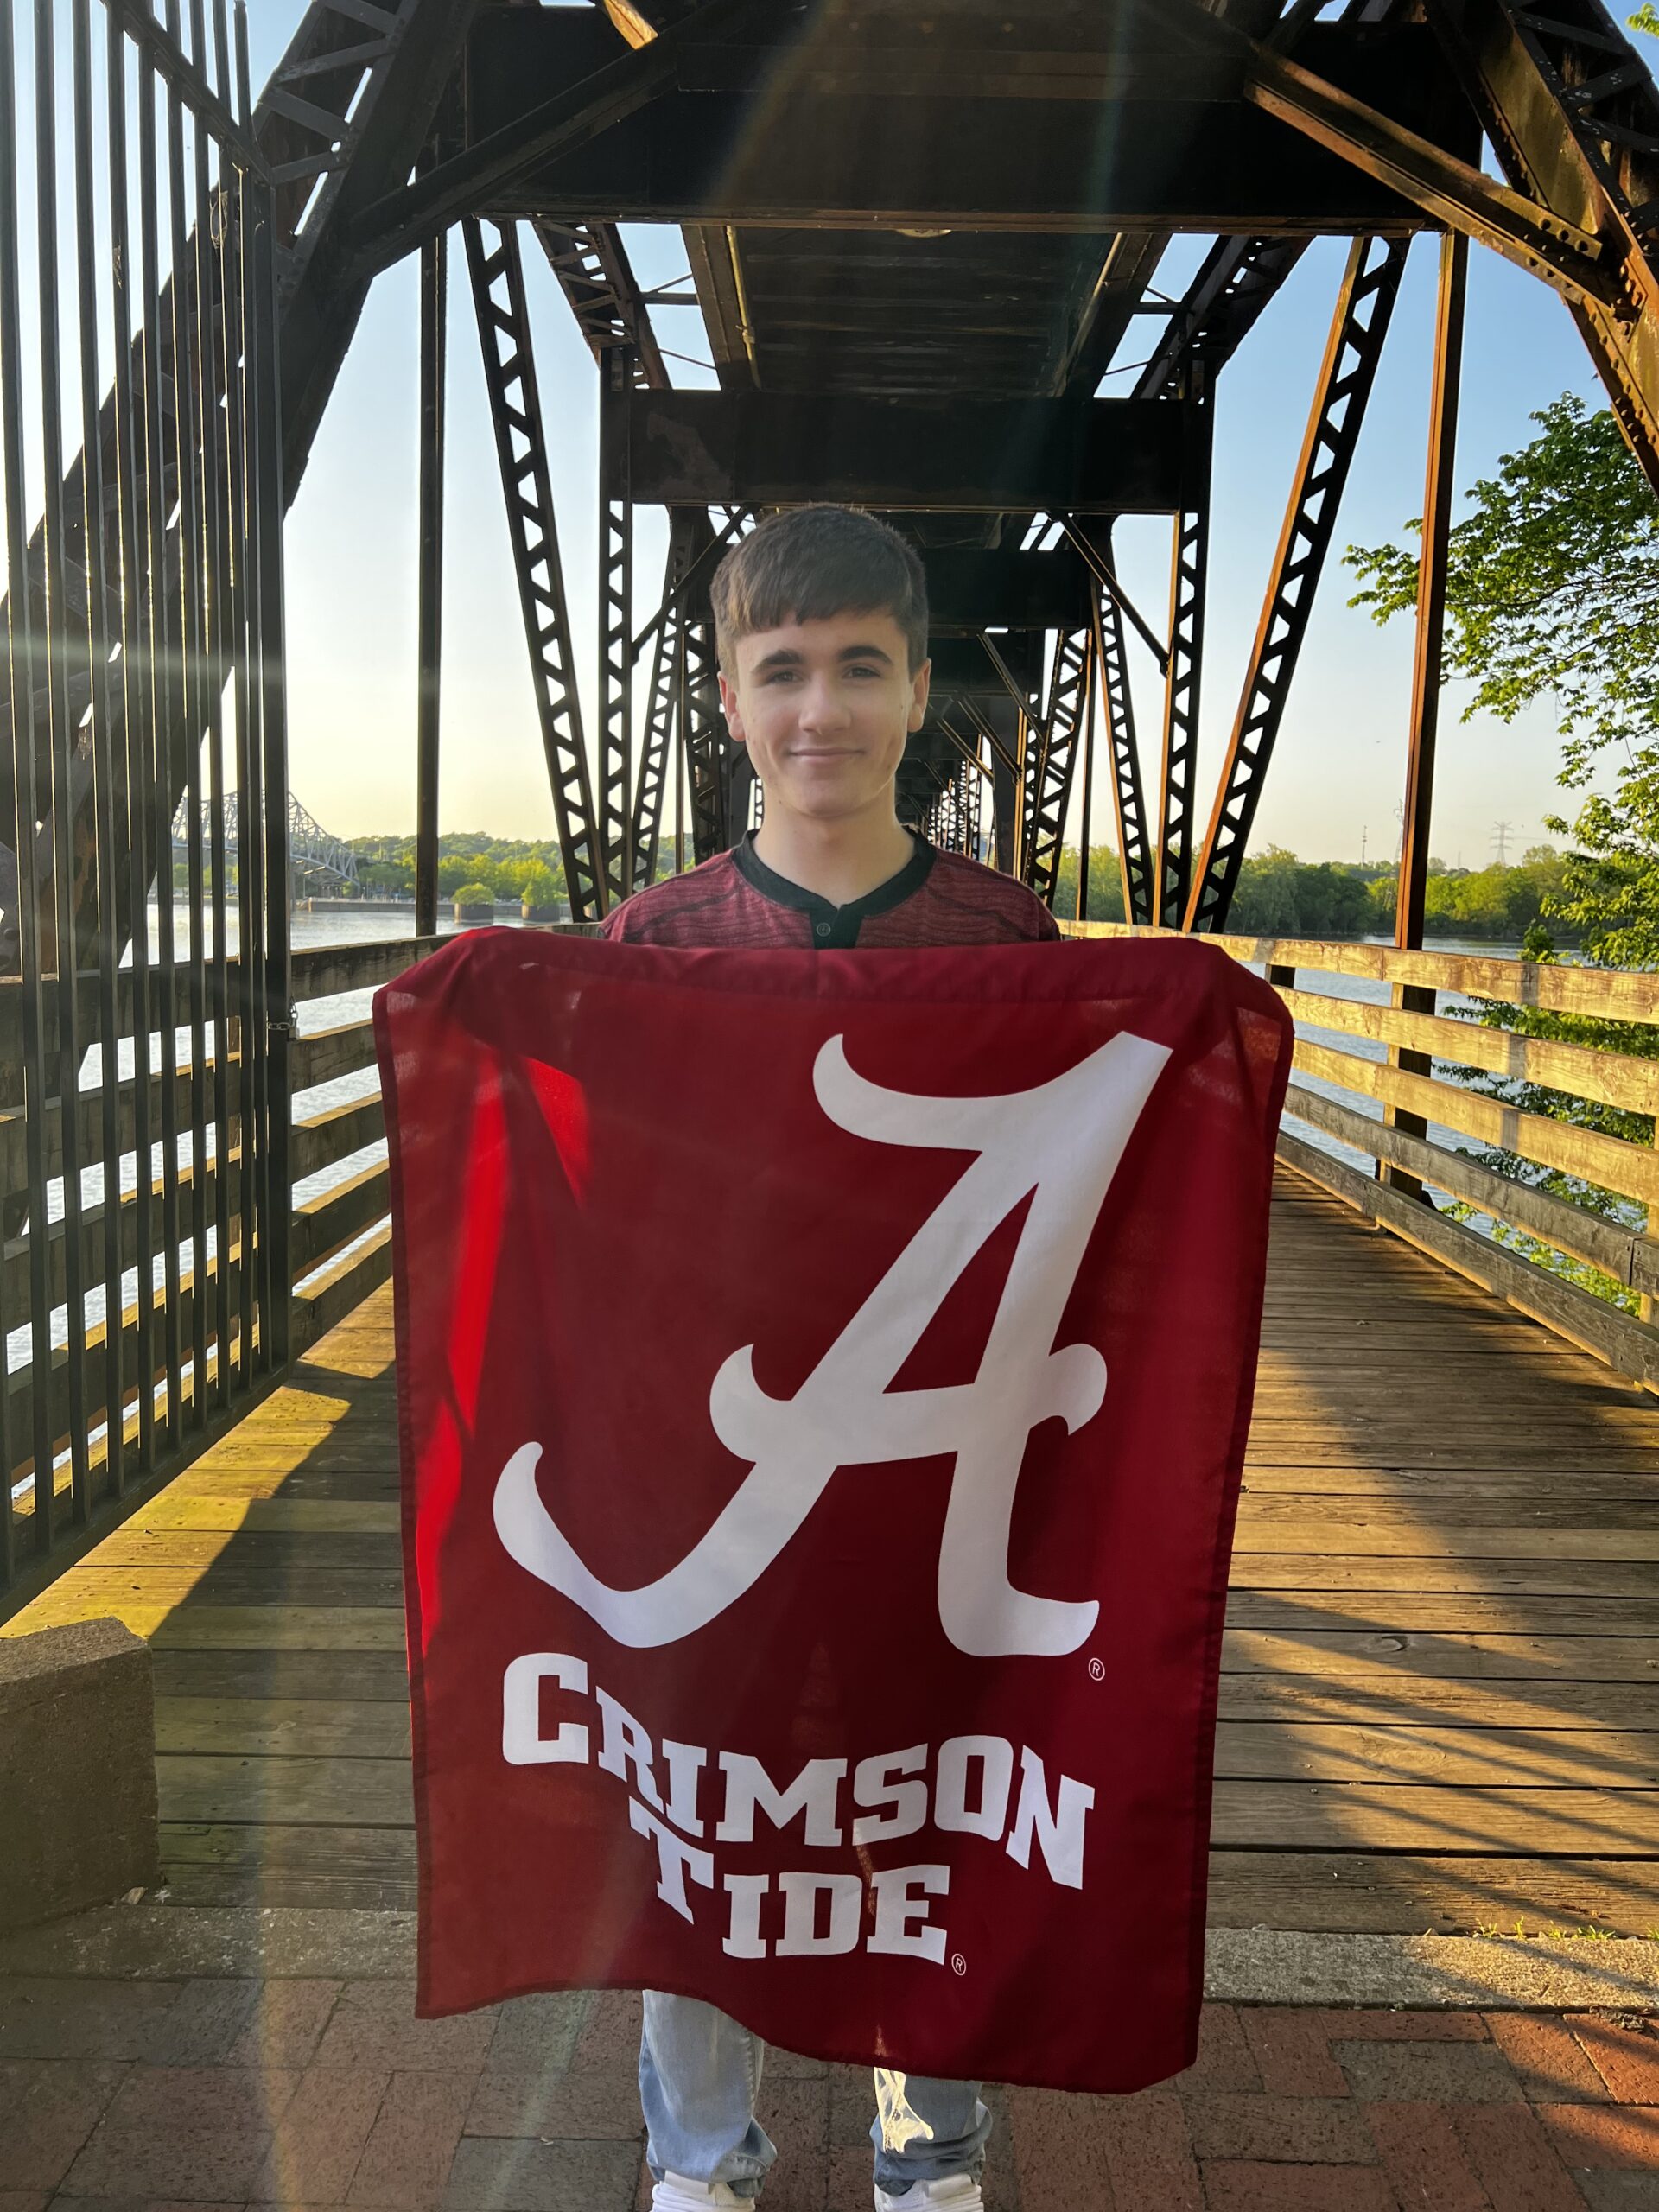 Payton Harper holding up the University of Alabama flag